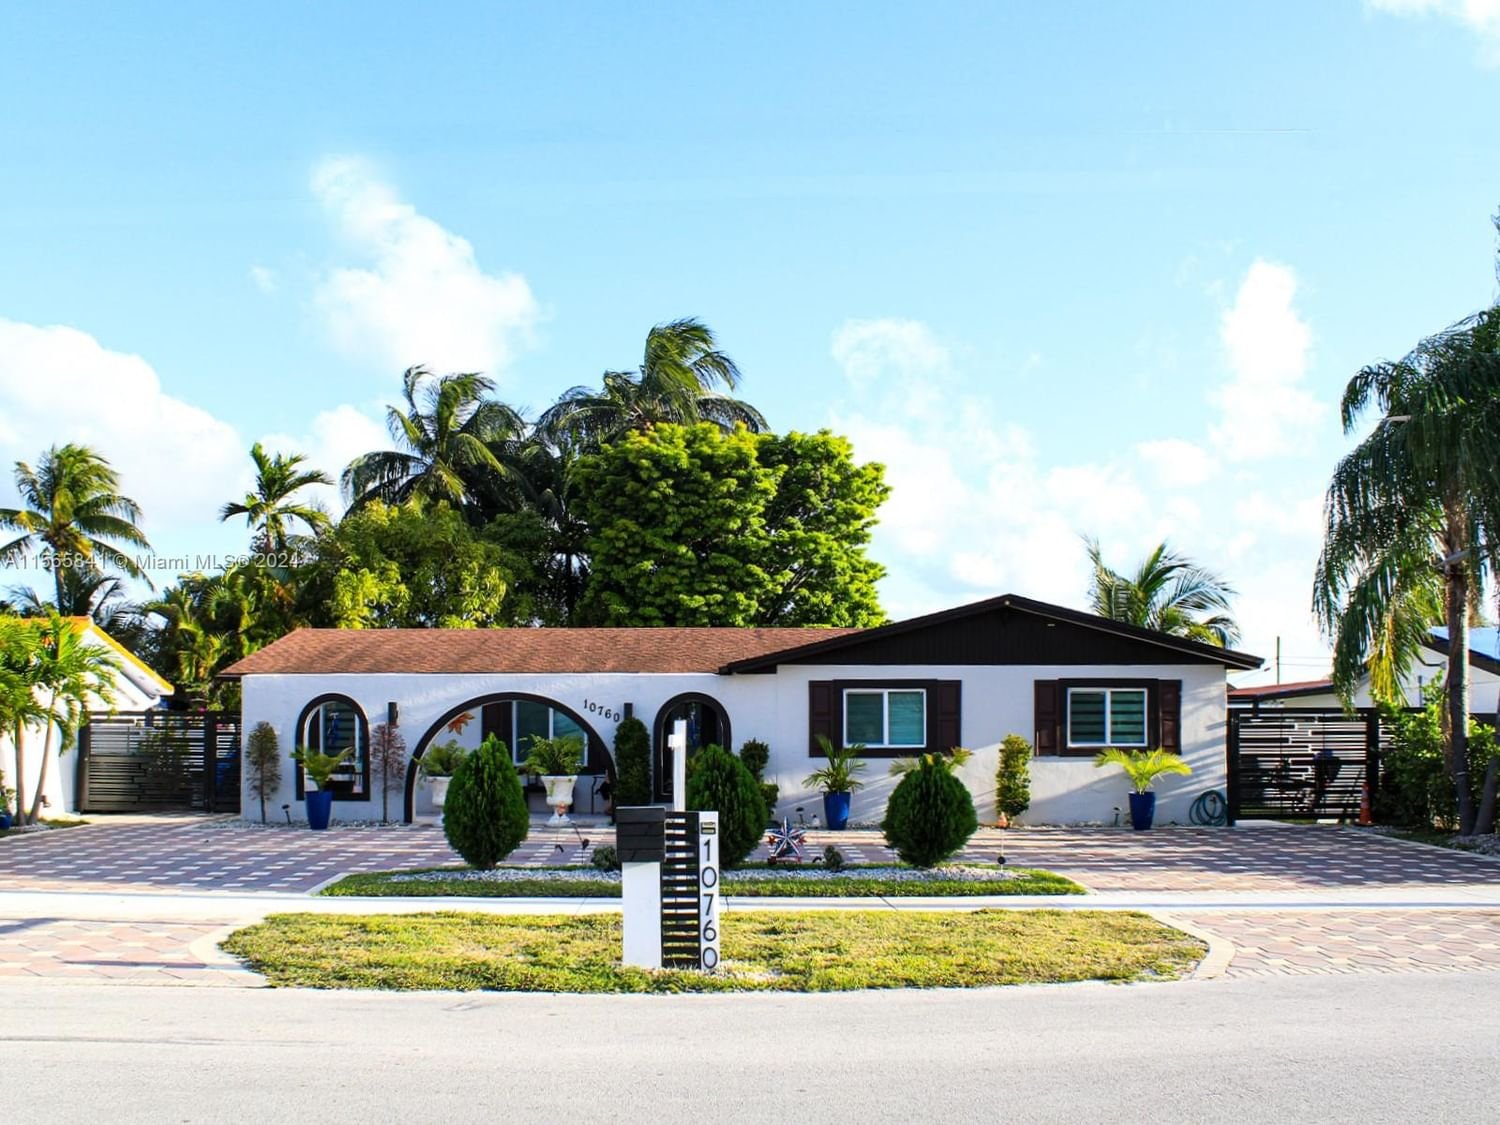 Real estate property located at 10760 28th St, Miami-Dade County, CUBARANDA ESTATES ADDN NO, Miami, FL